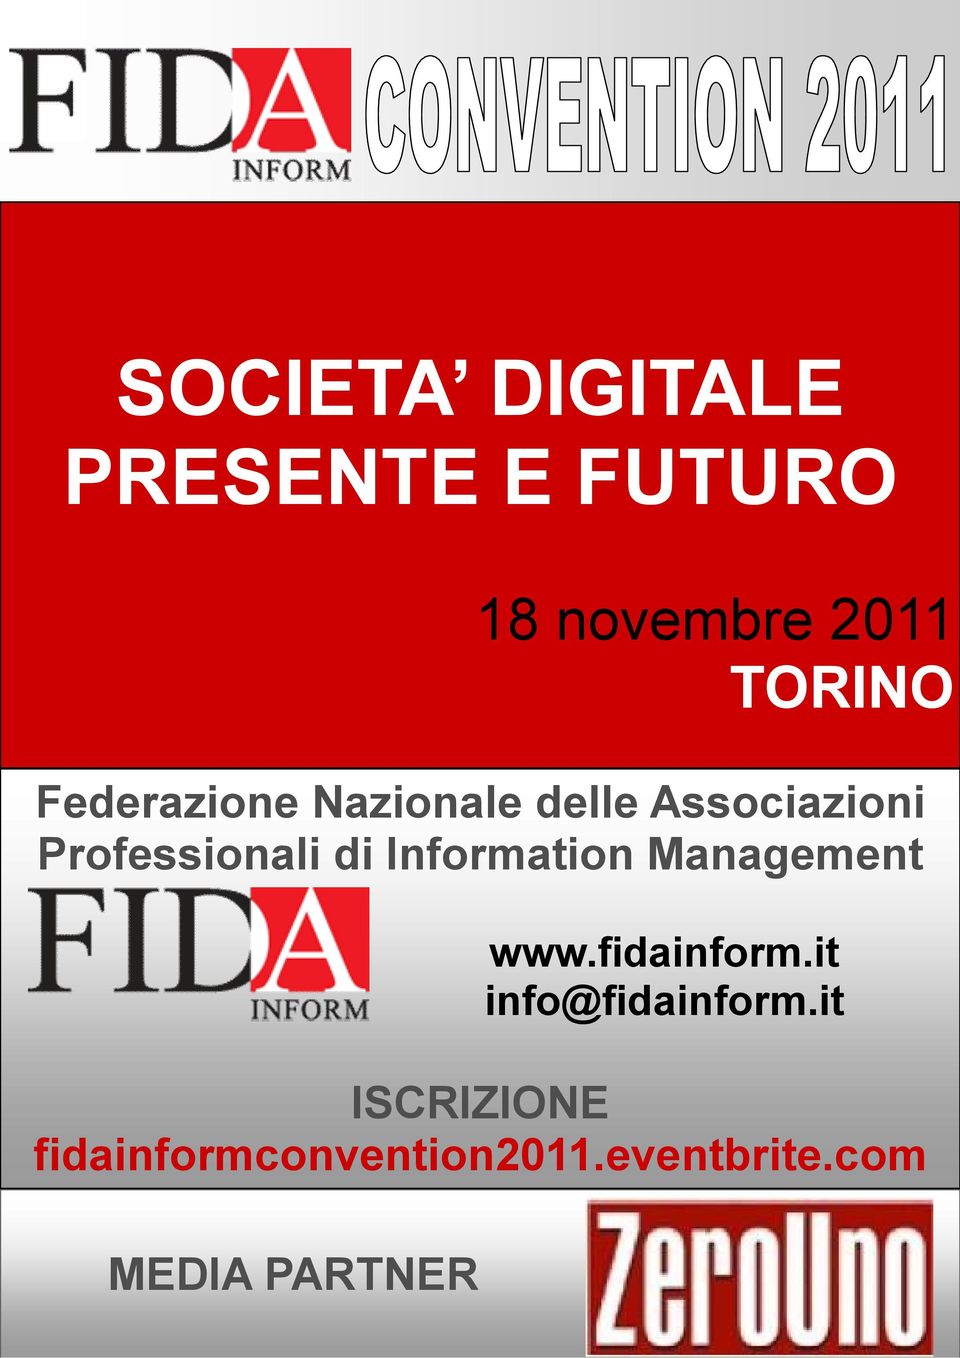 Information Management www.fidainform.it info@fidainform.